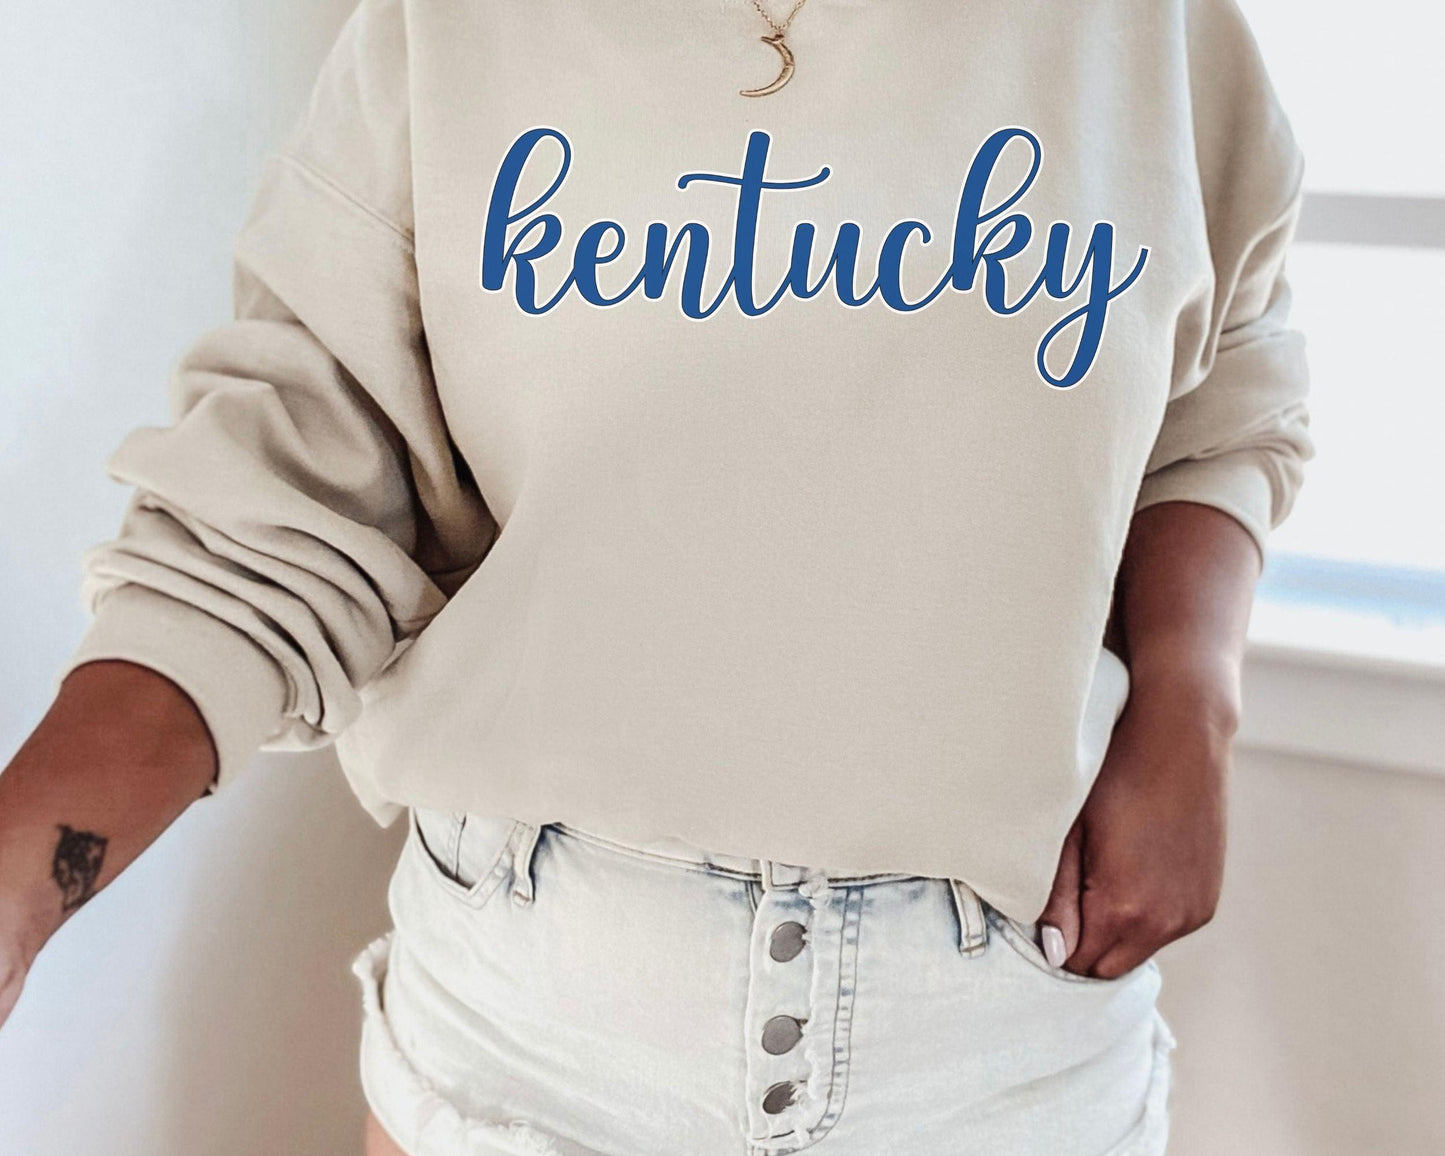 Kentucky Home State - BentleyBlueCo